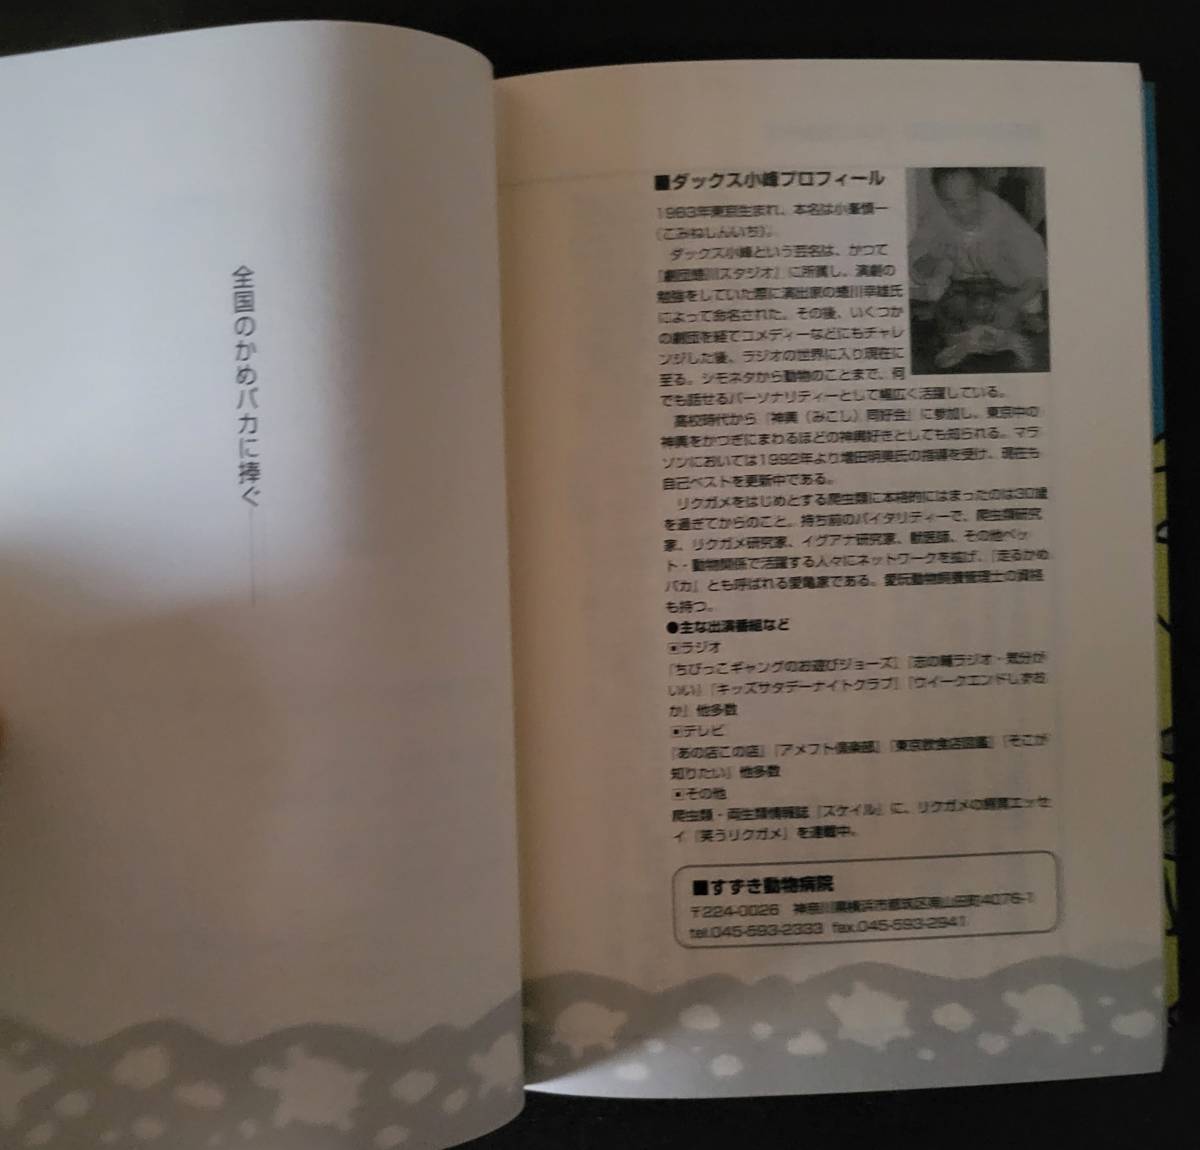  Tokyo черепаха baka дневник - черепаха nimo отрицательный kez(scaleMOOK) монография 1999/8/1 Dux маленький .( работа )